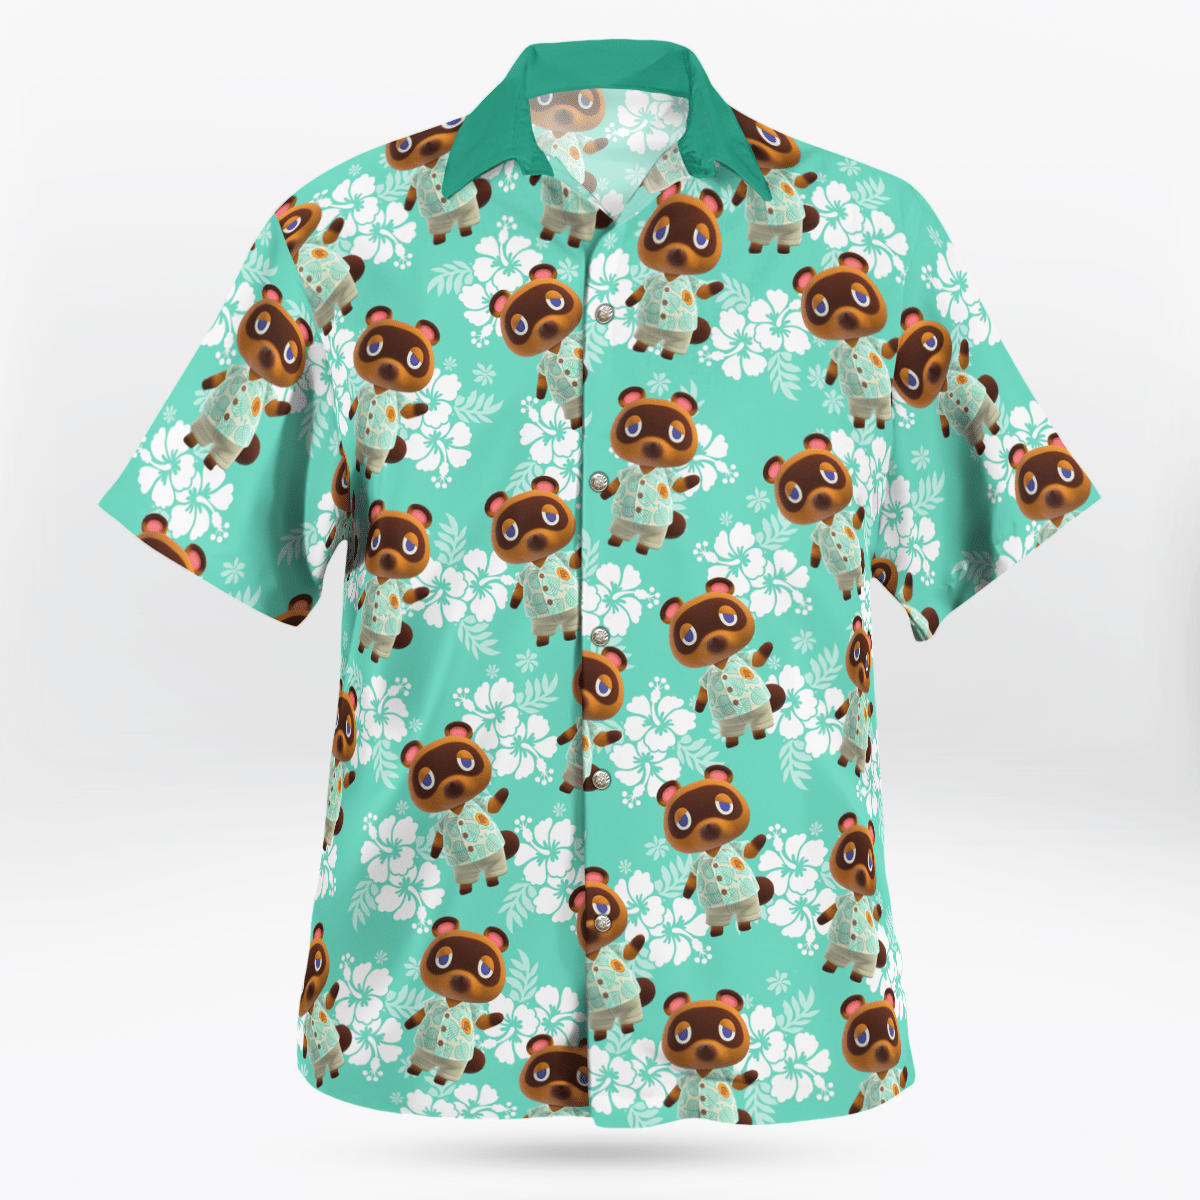 Tom Nook Hawaiian shirt 1